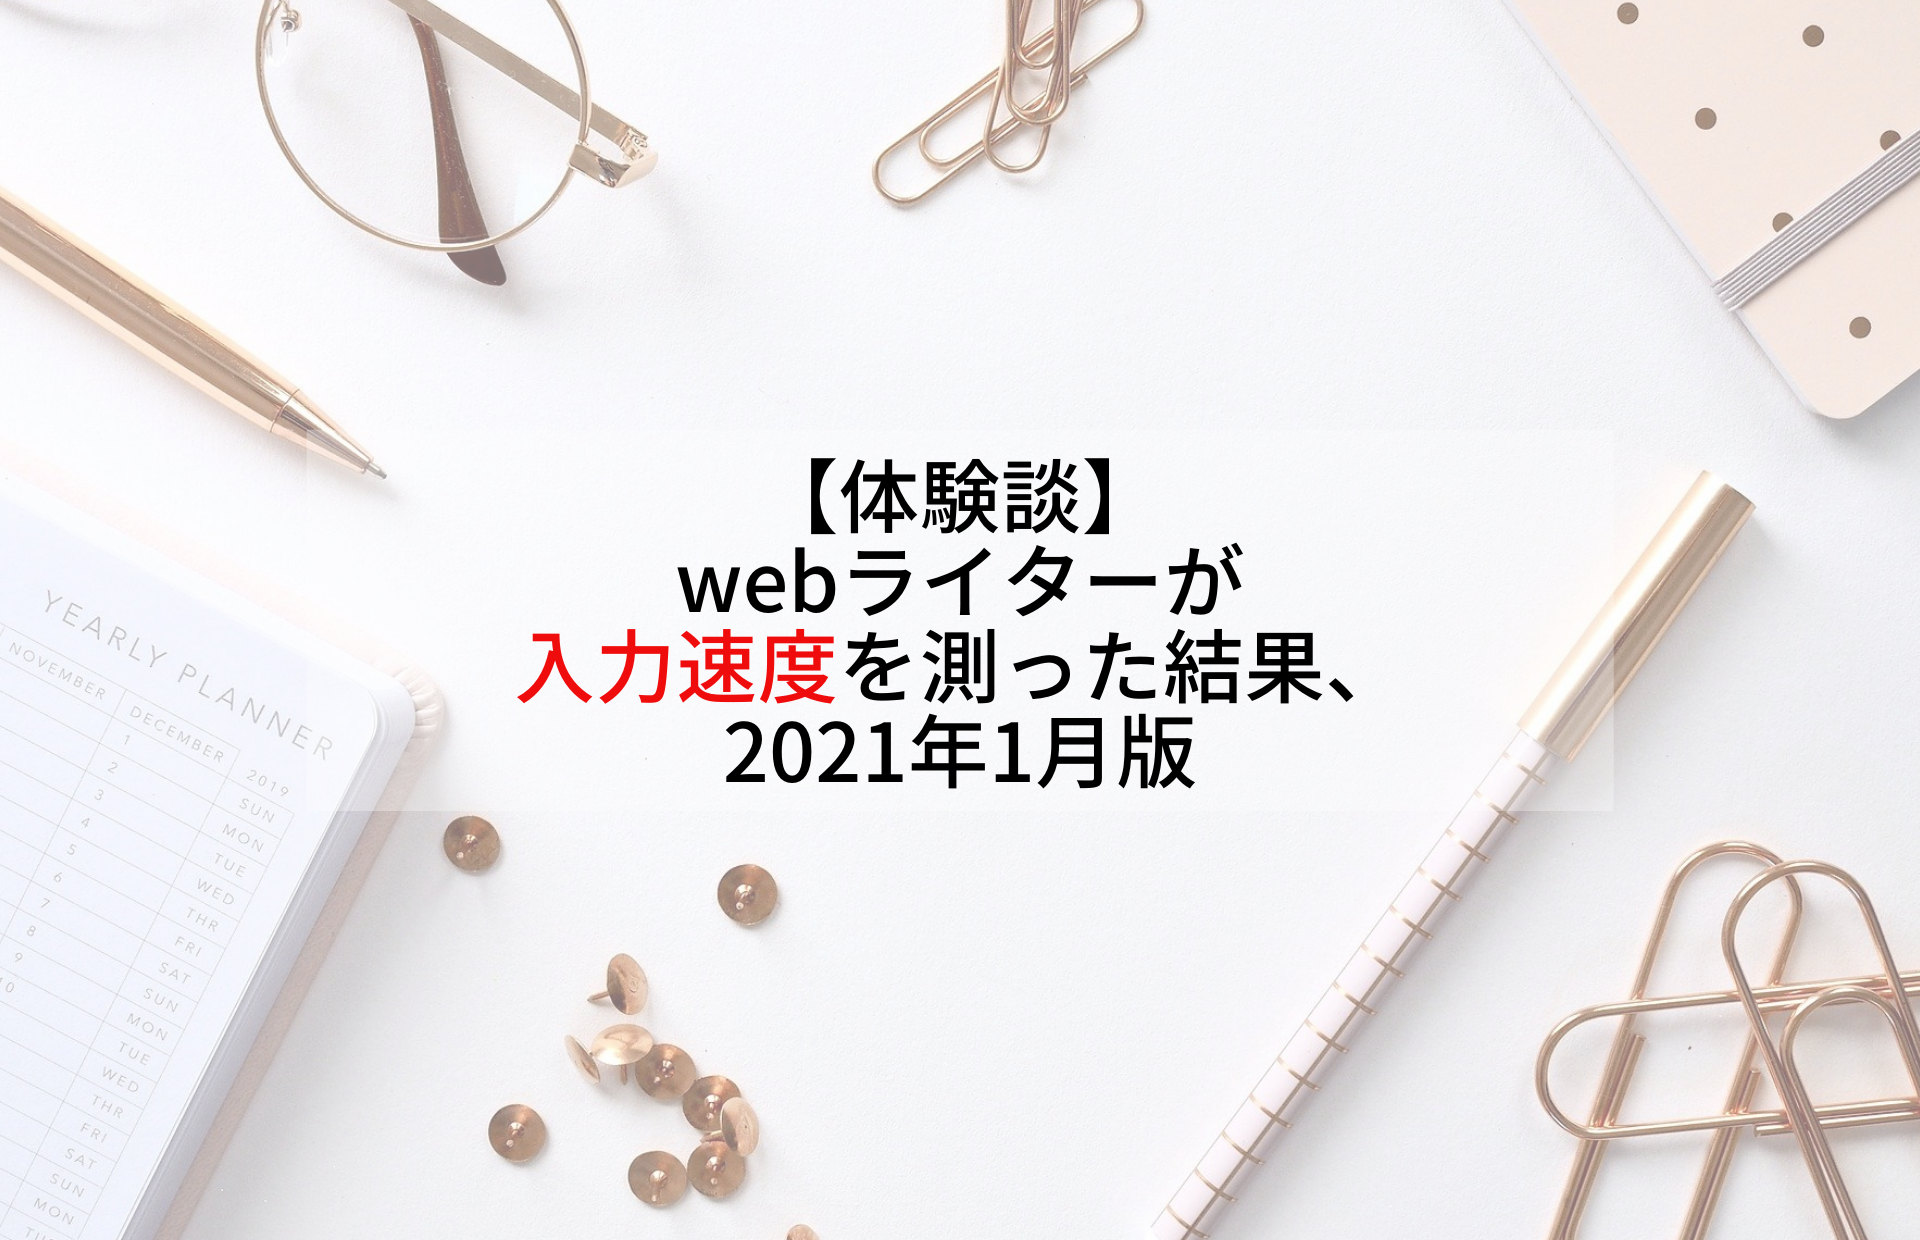 【体験談】webライターが入力速度を測った結果、2021年1月版